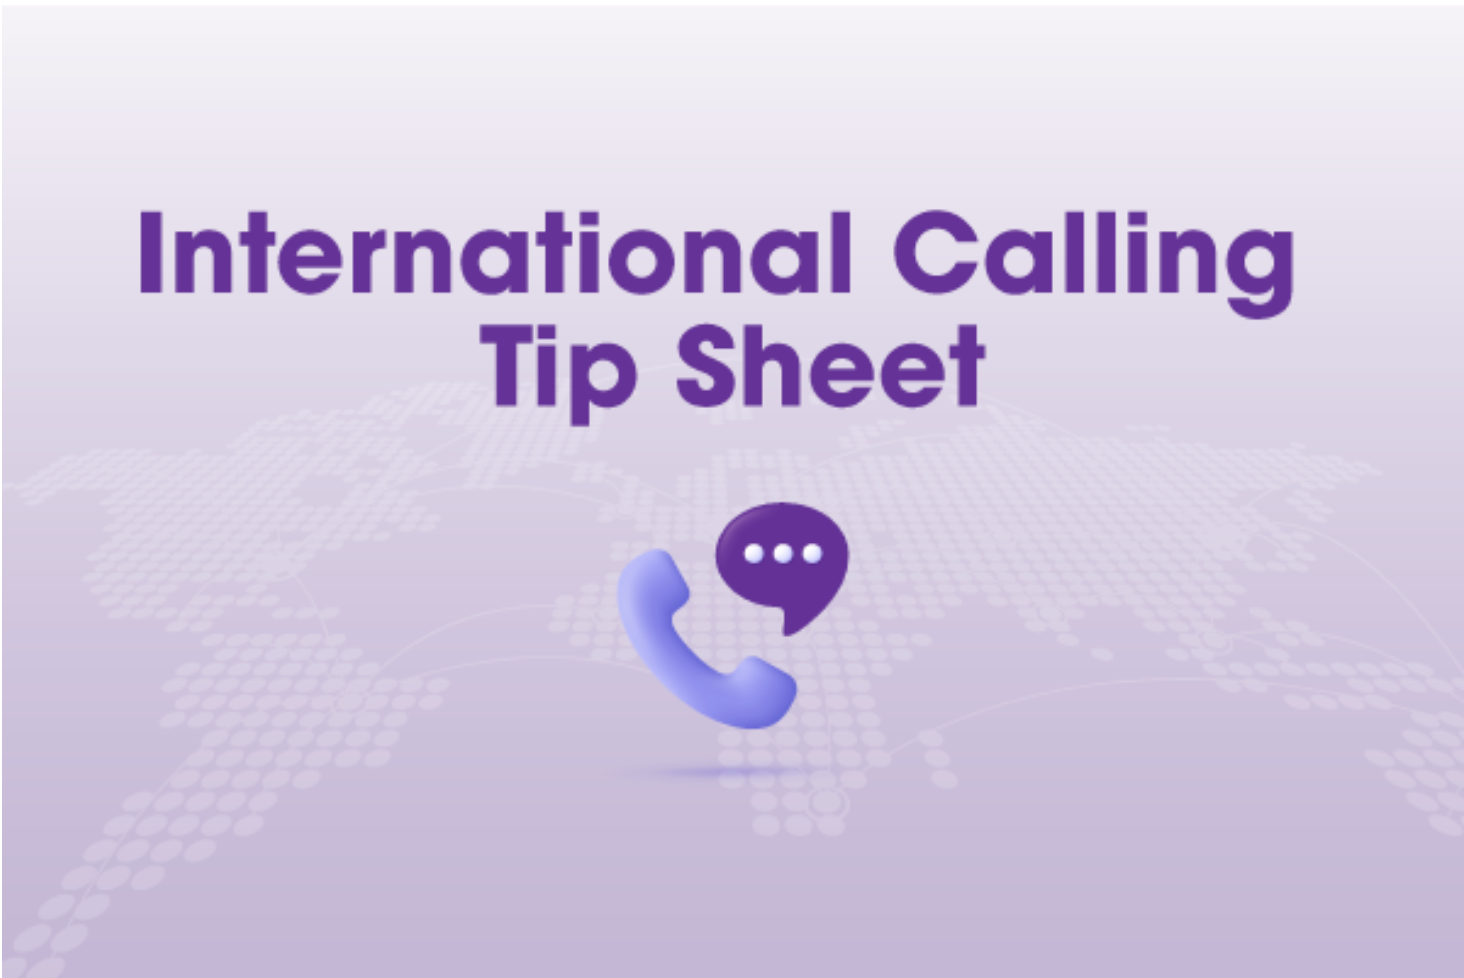 International Calling Tip Sheet